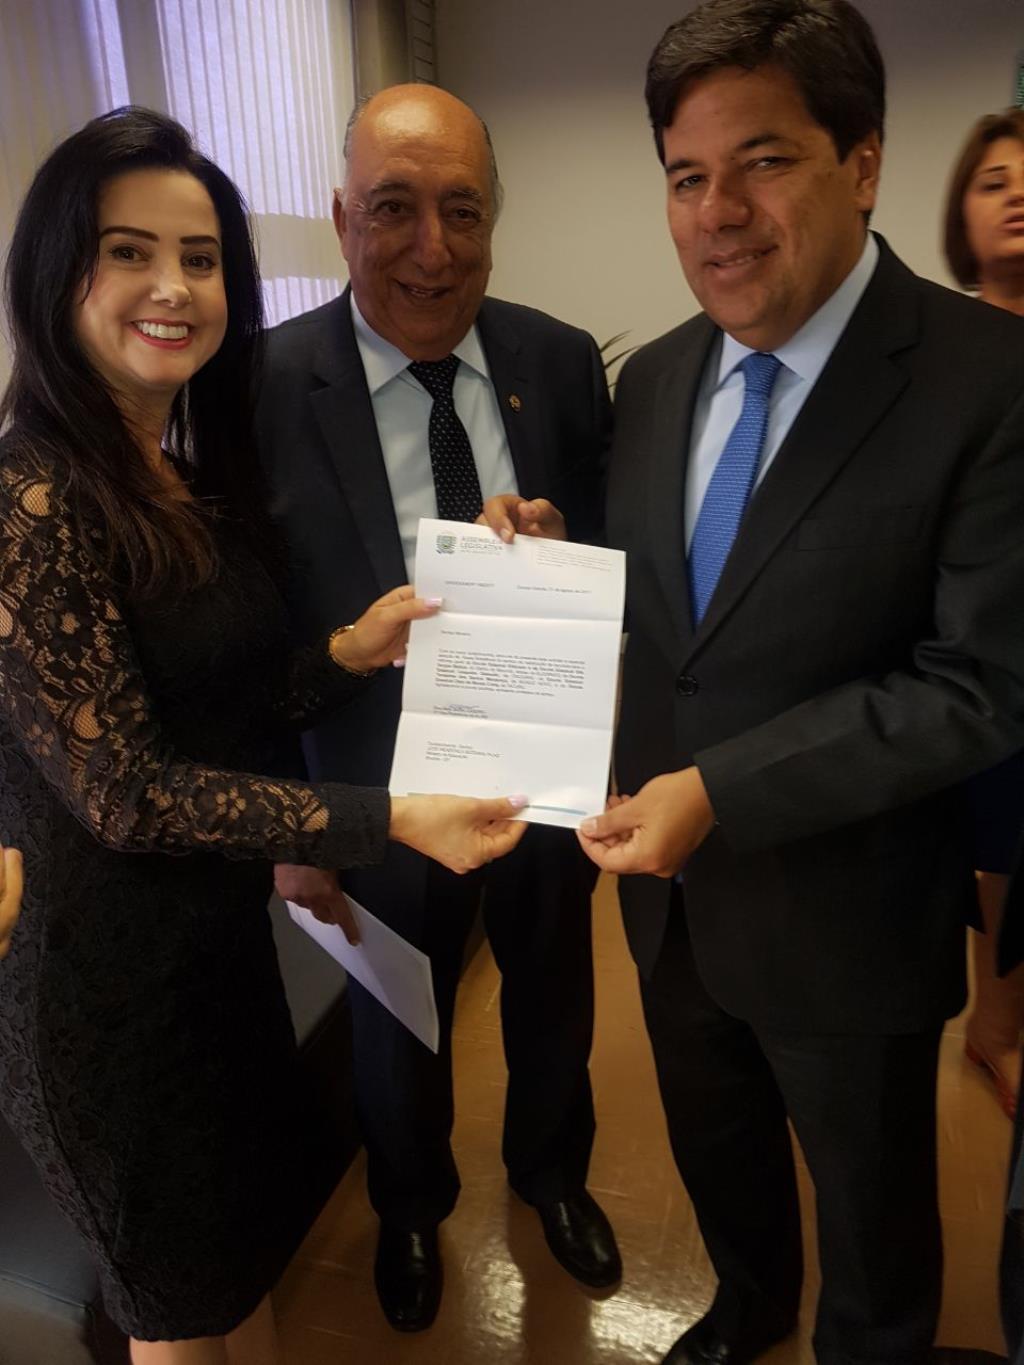 Imagem: Mara Caseiro e Pedro Chaves entregam pedidos a ministro Mendonça Filho